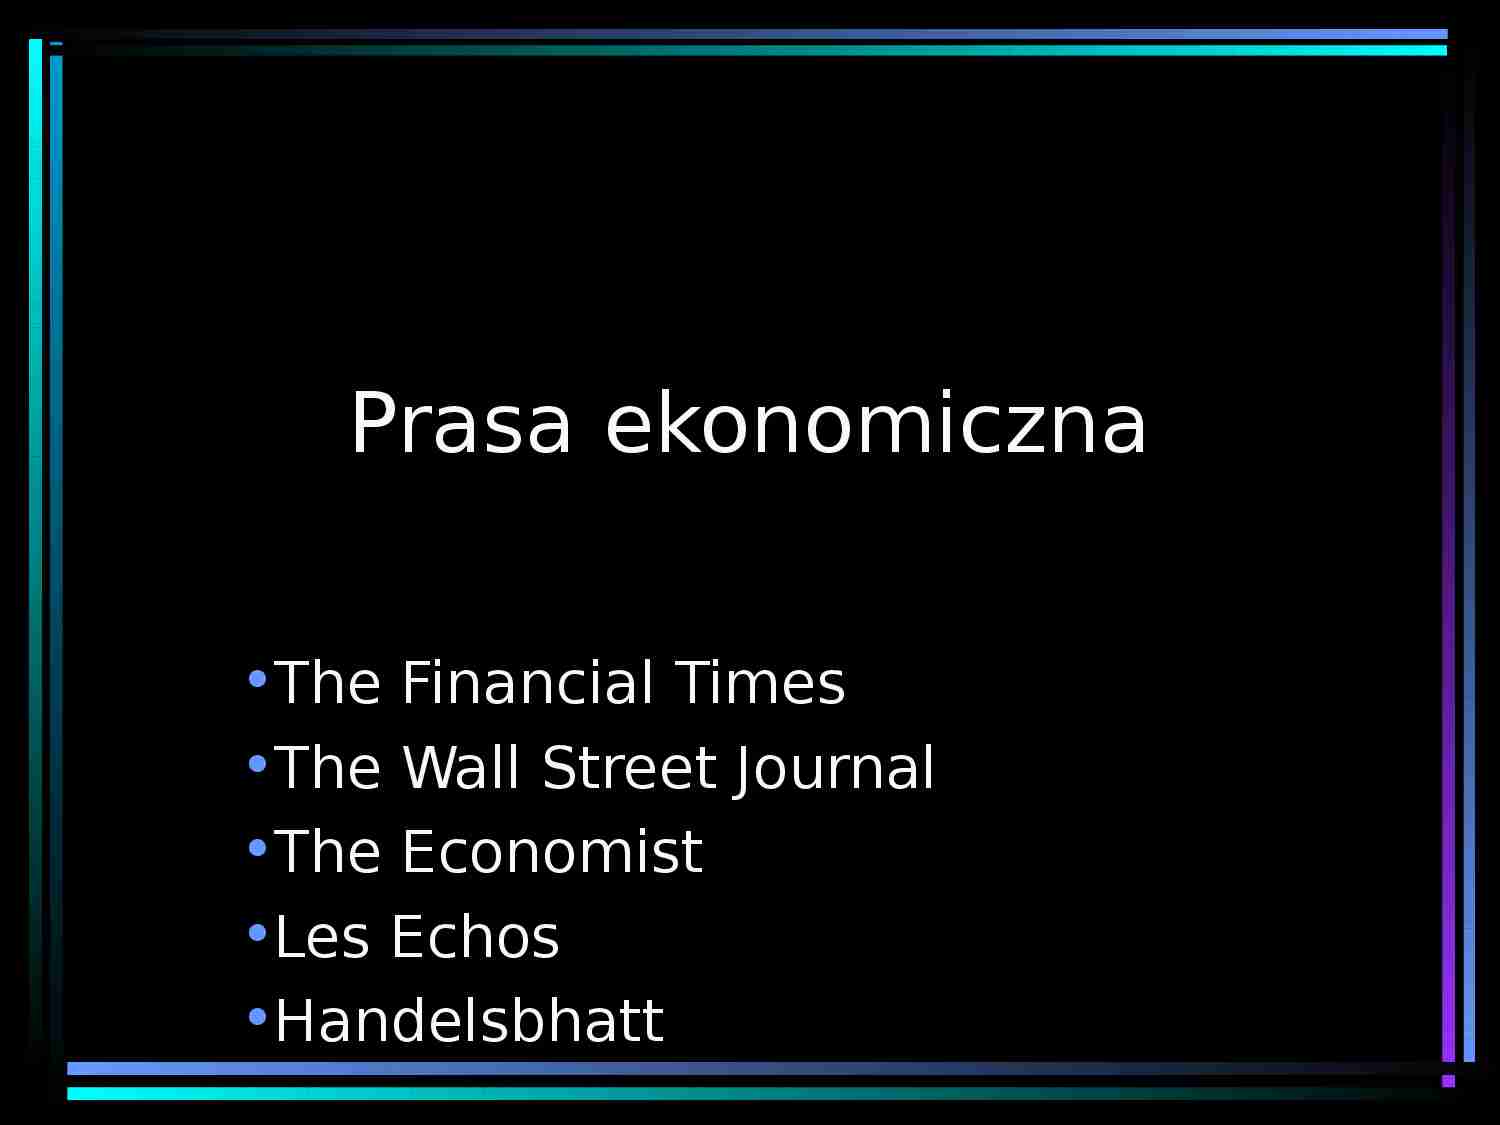 Prasa ekonomiczna - prezentacja - strona 1